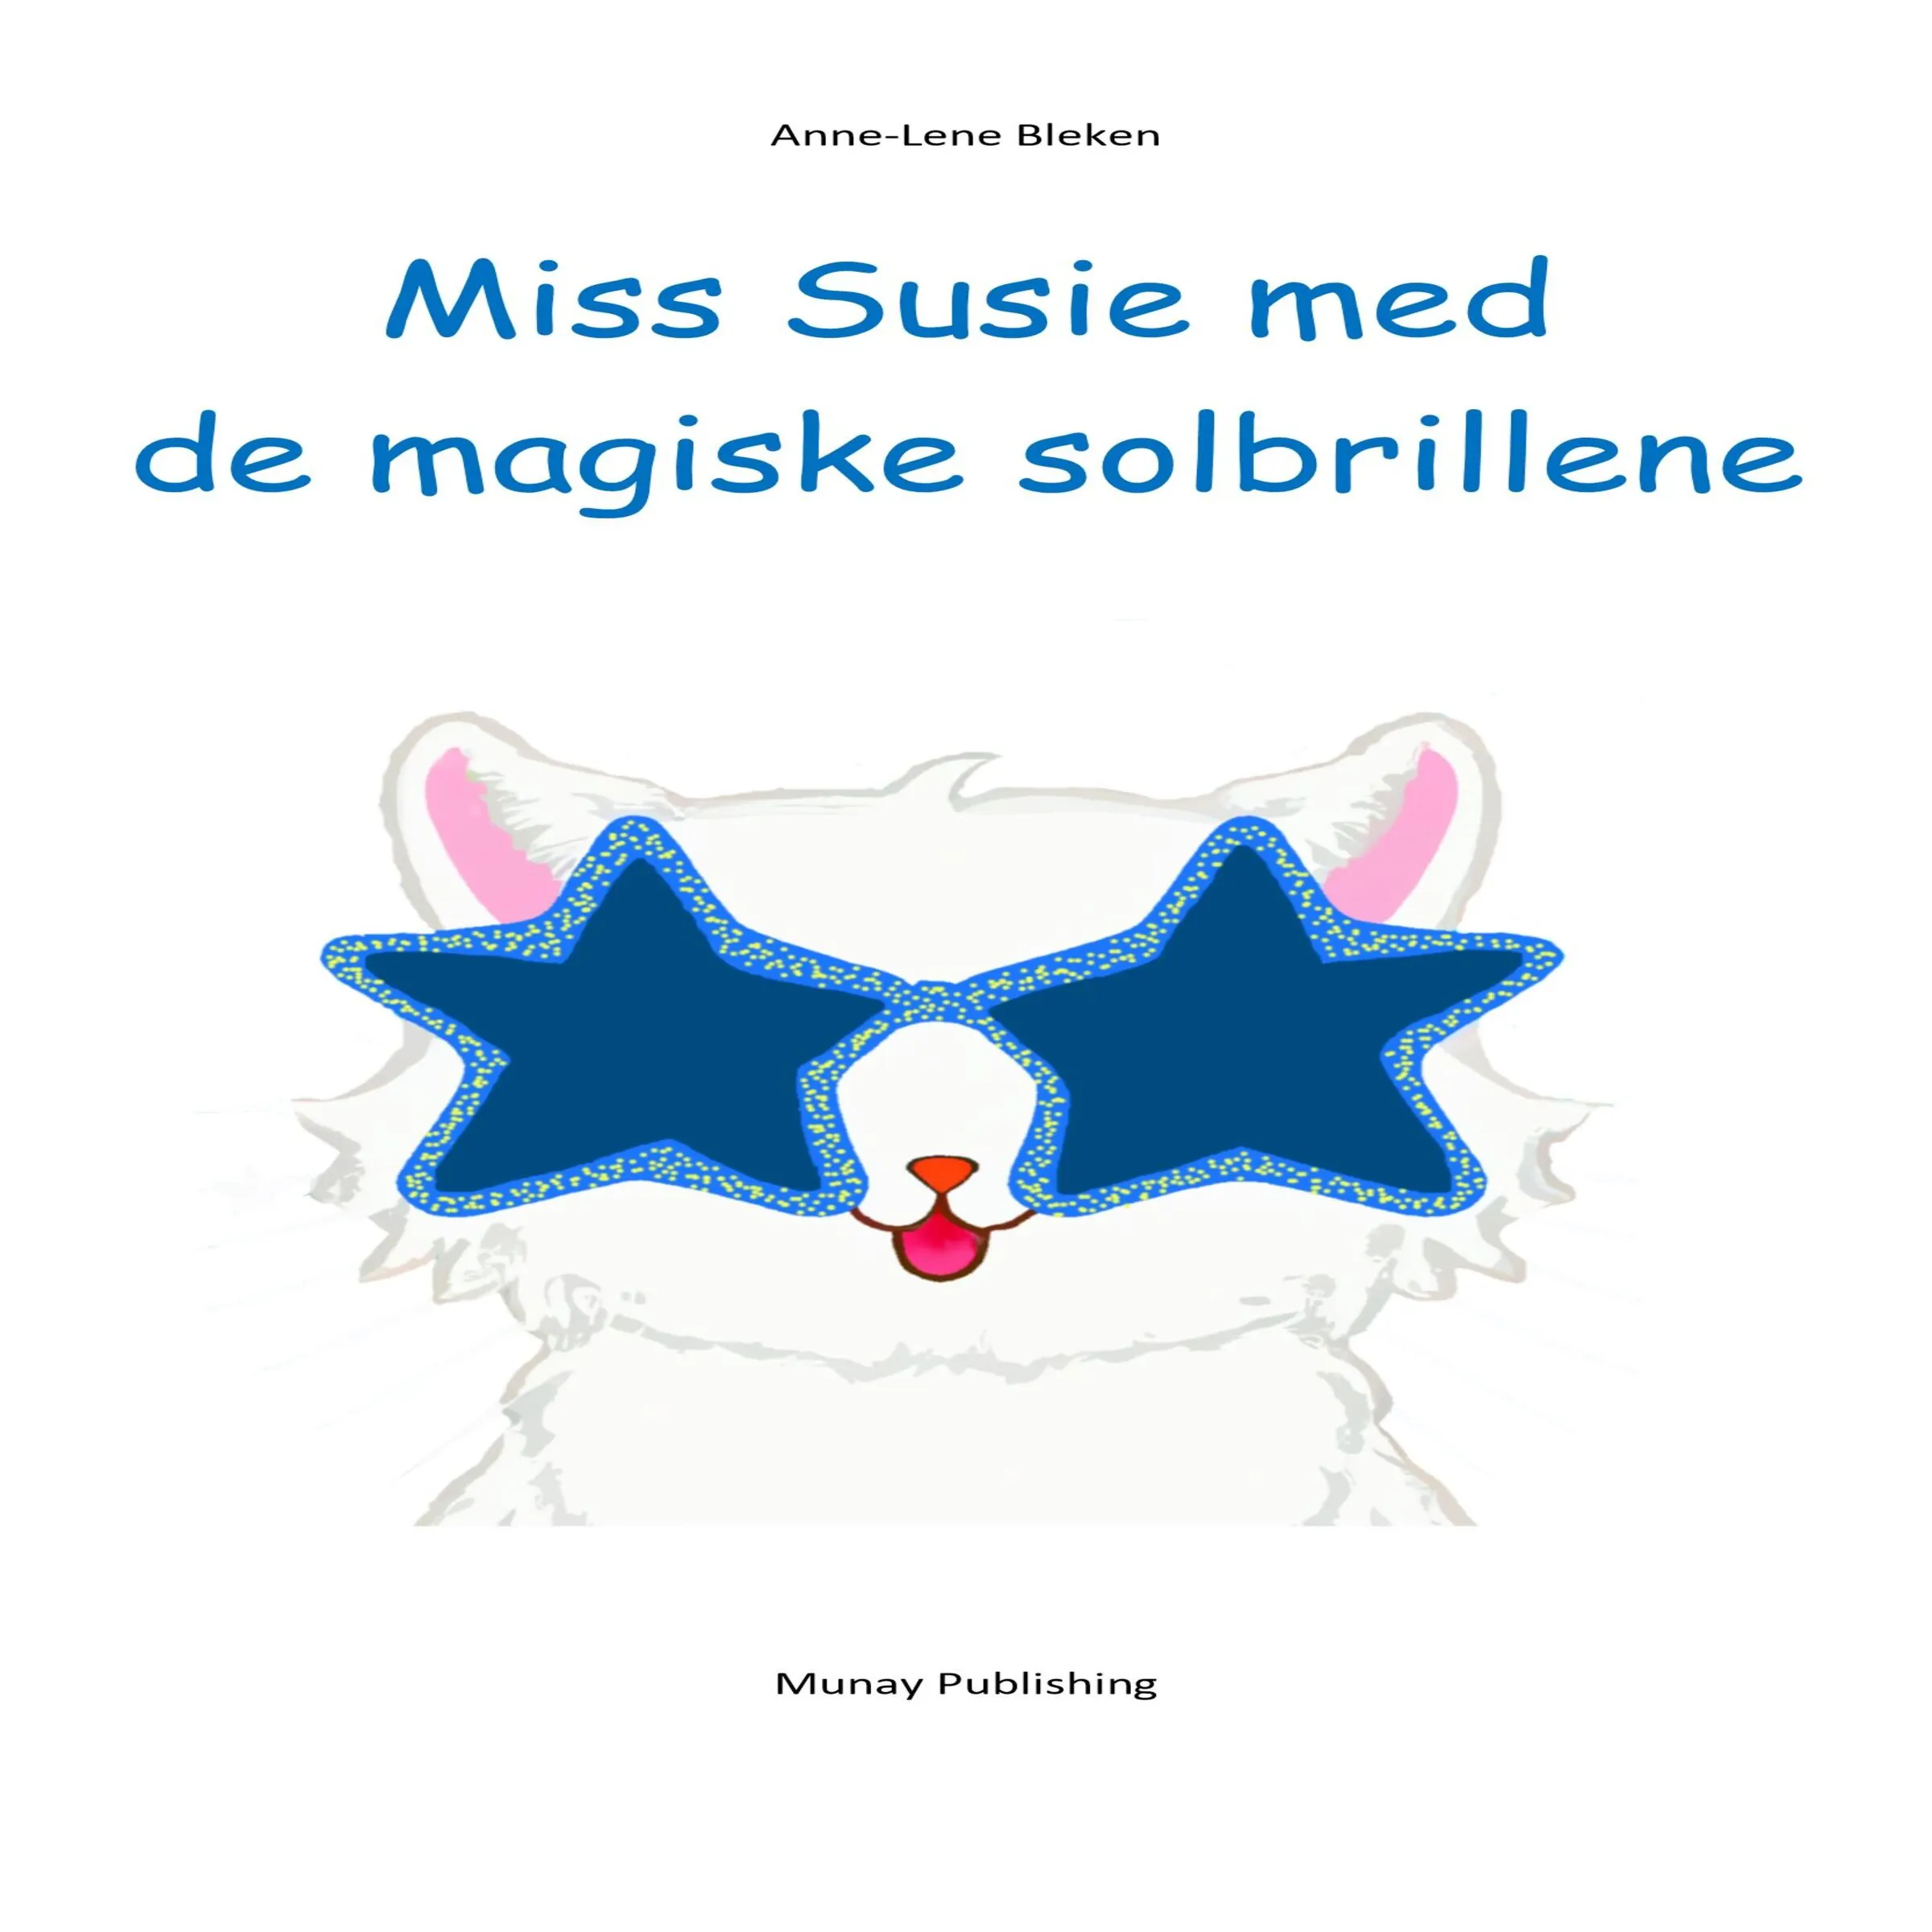 Miss Susie med de magiske solbrillene by Anne-Lene Bleken Audiobook